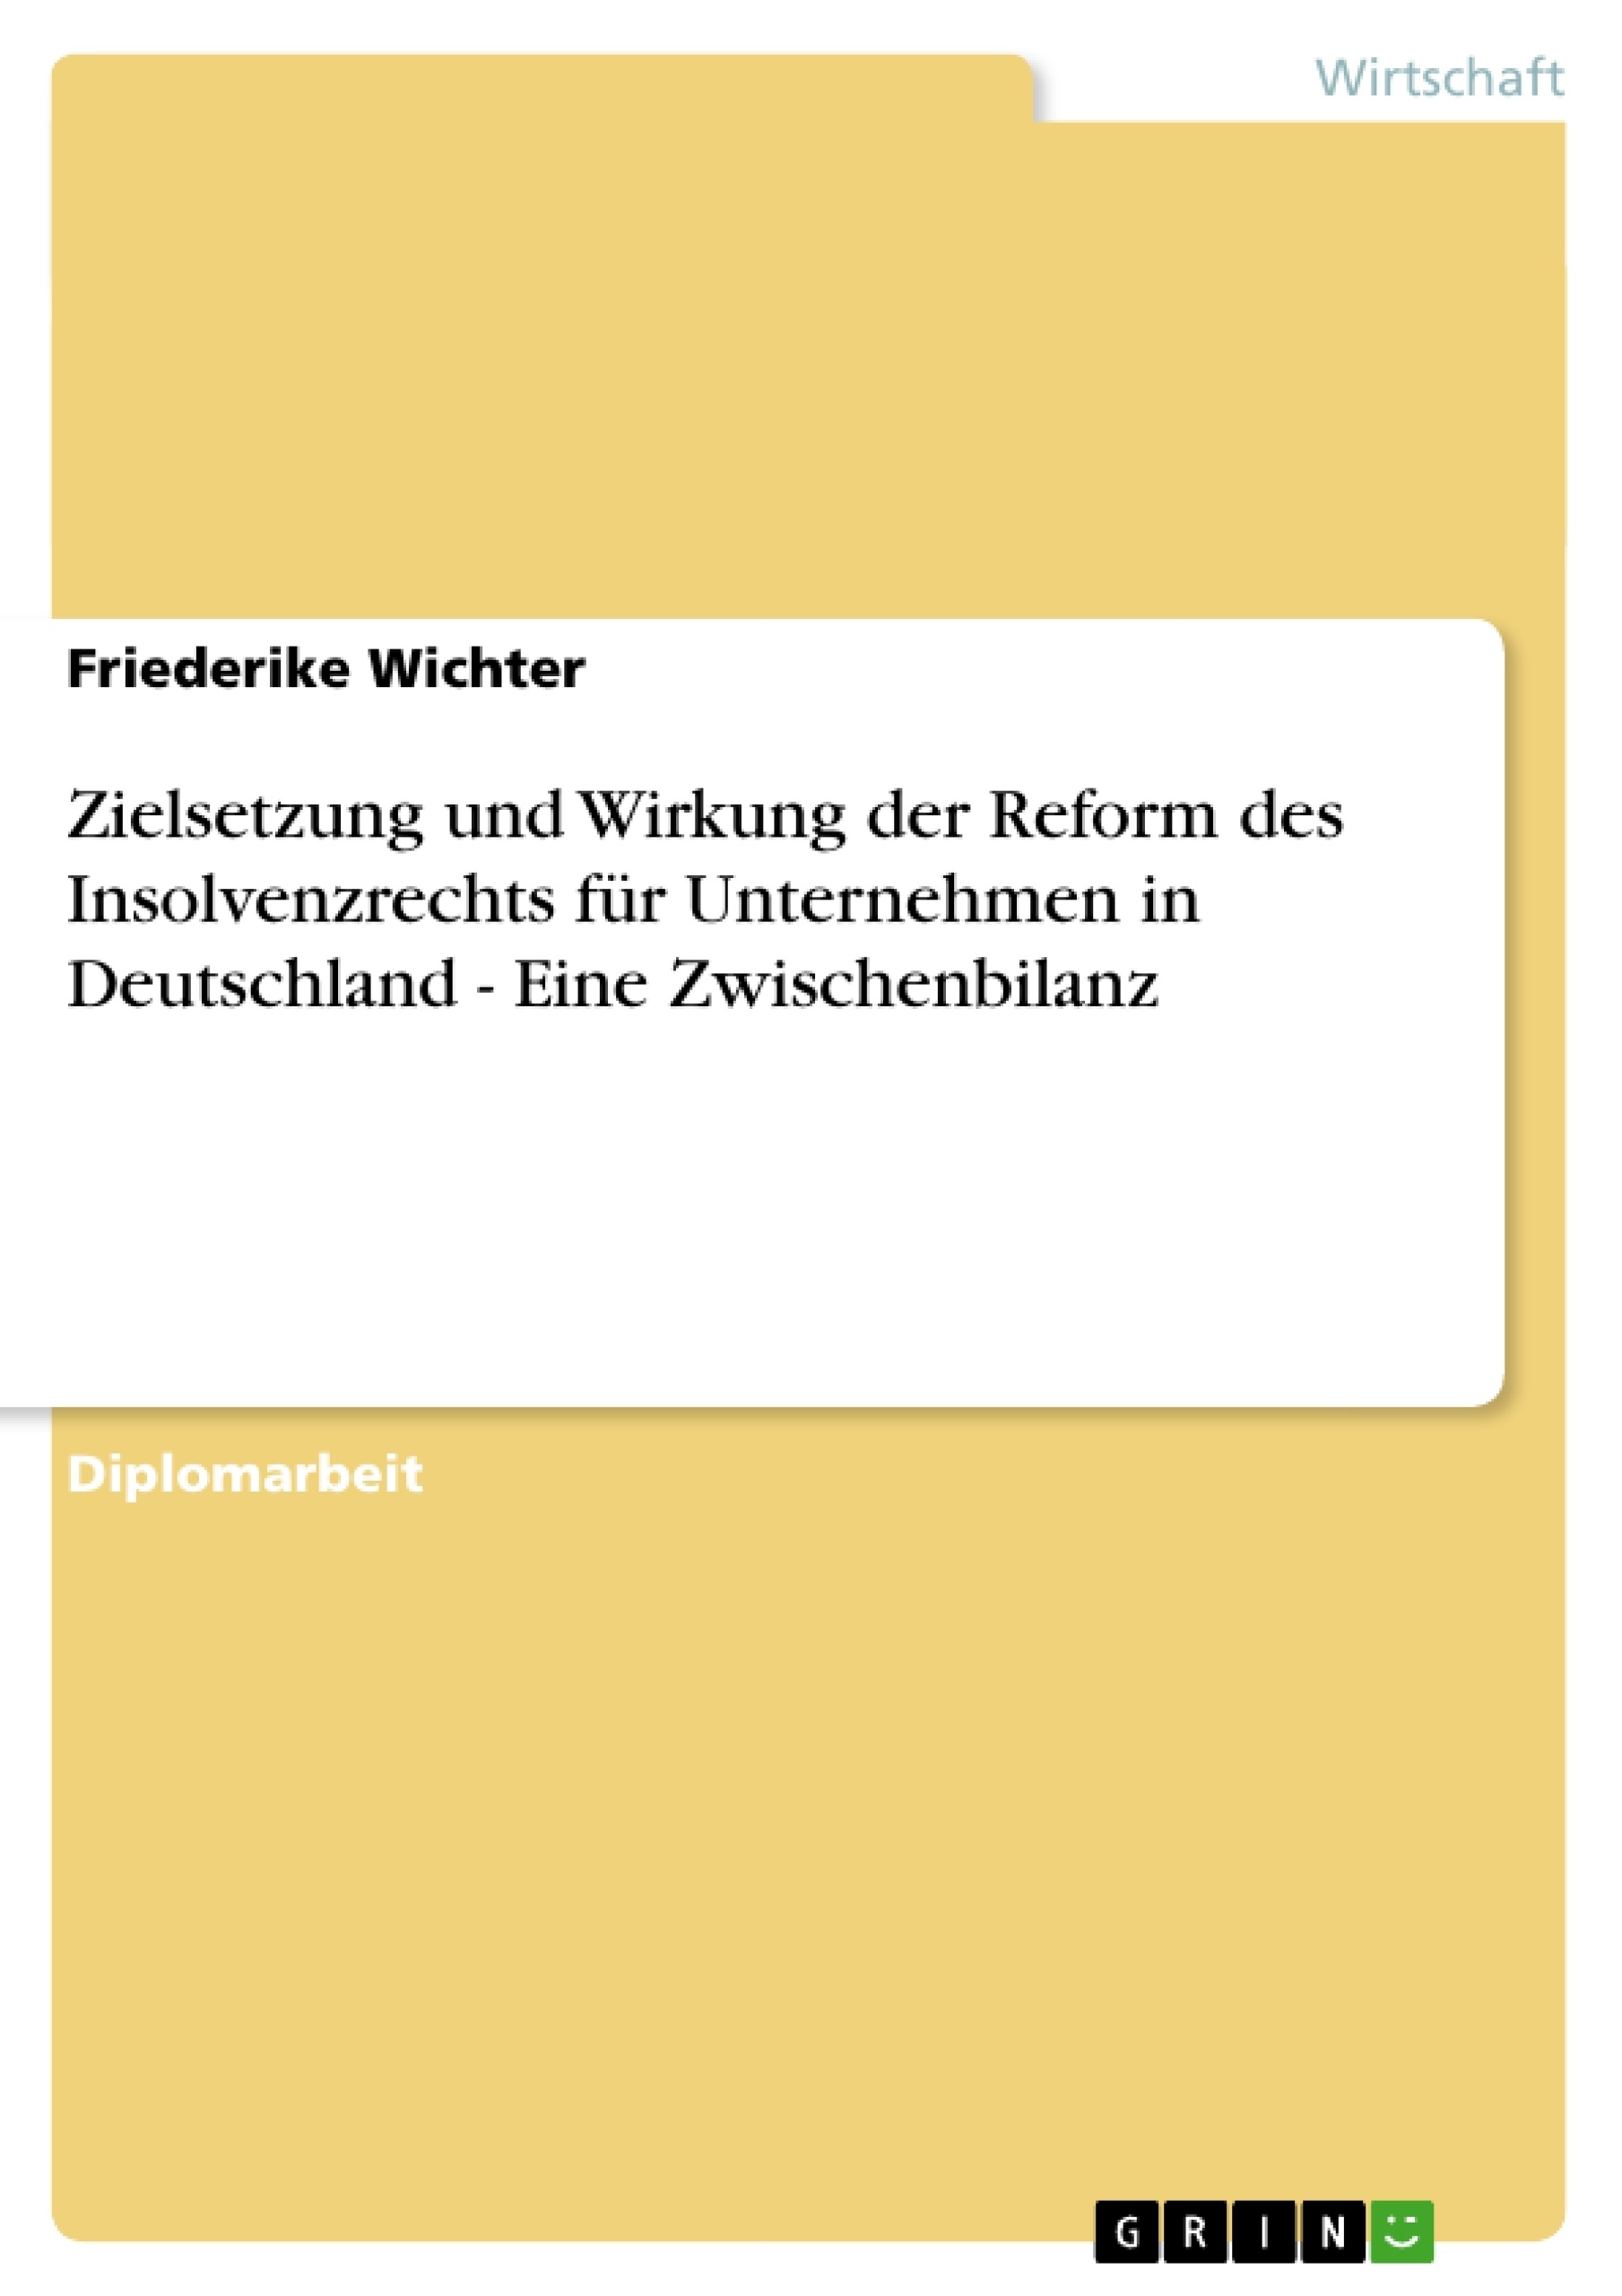 Título: Zielsetzung und Wirkung der Reform des Insolvenzrechts für Unternehmen in Deutschland - Eine Zwischenbilanz